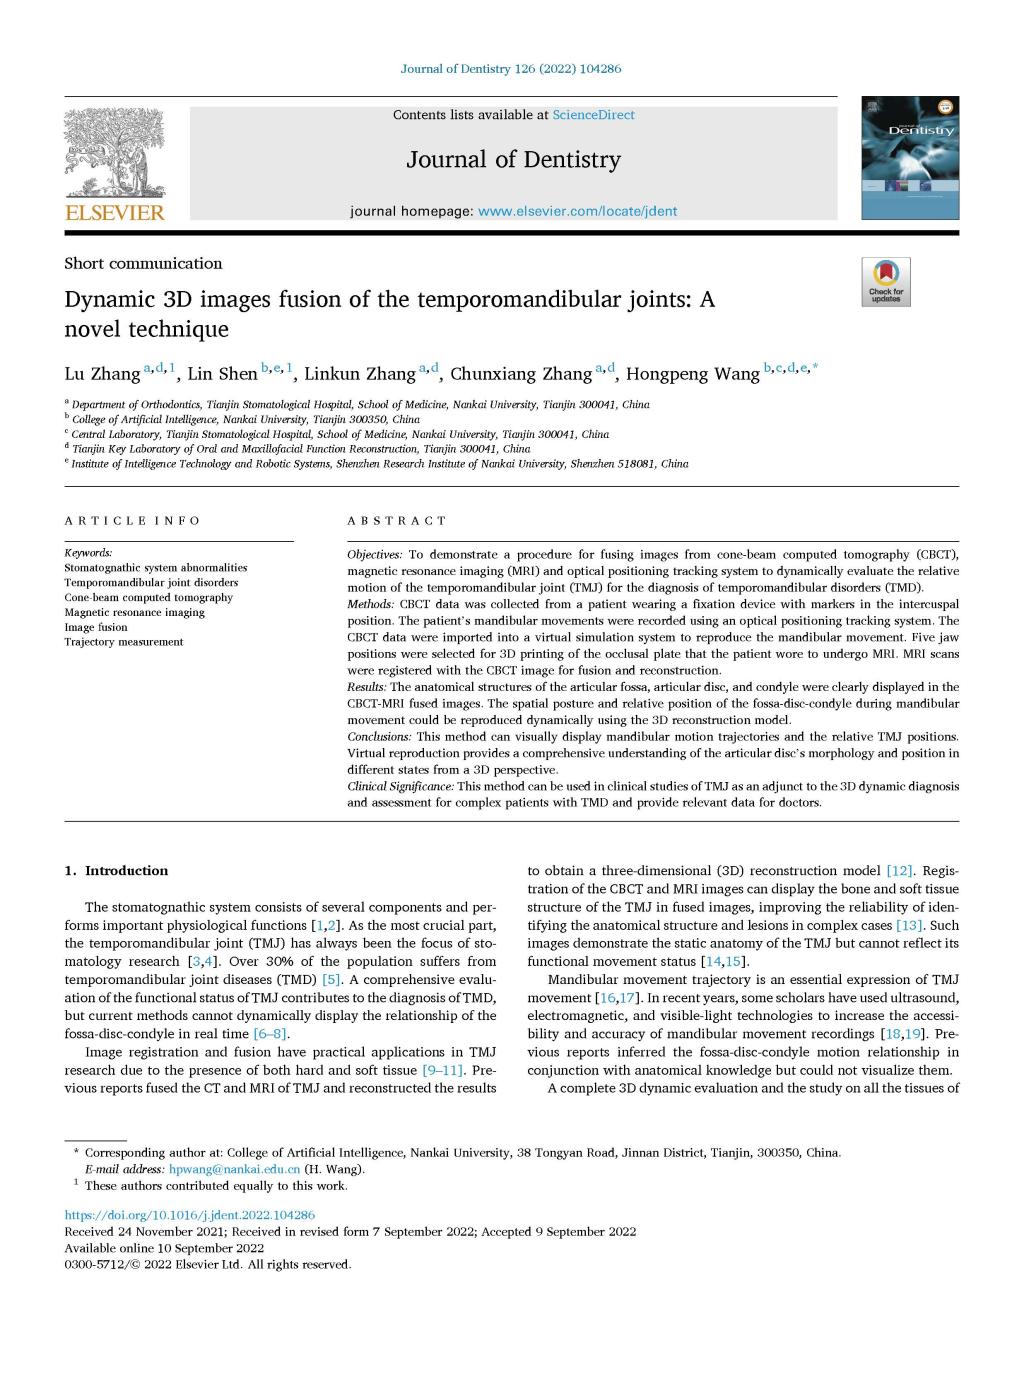 王鸿鹏课题组在Journal of Dentistry(SCI 1区)期刊发表论文"Dynamic 3D Images Fusion of the Temporomandibular Joints: A Novel Technique"